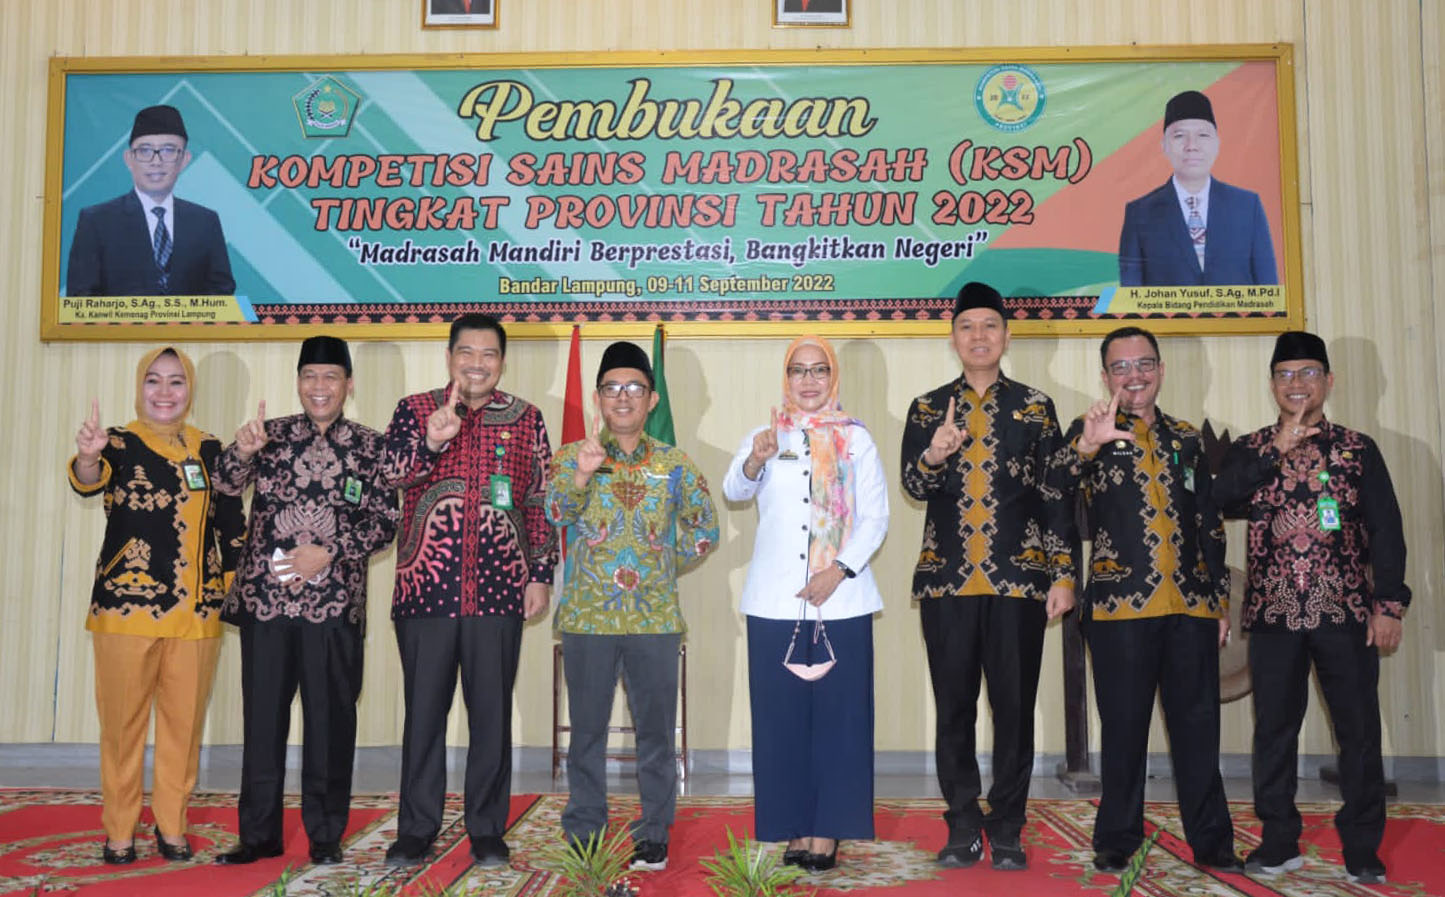 Kompetisi Sains Madrasah Tingkat Provinsi Lampung Tahun 2022 Resmi Dibuka